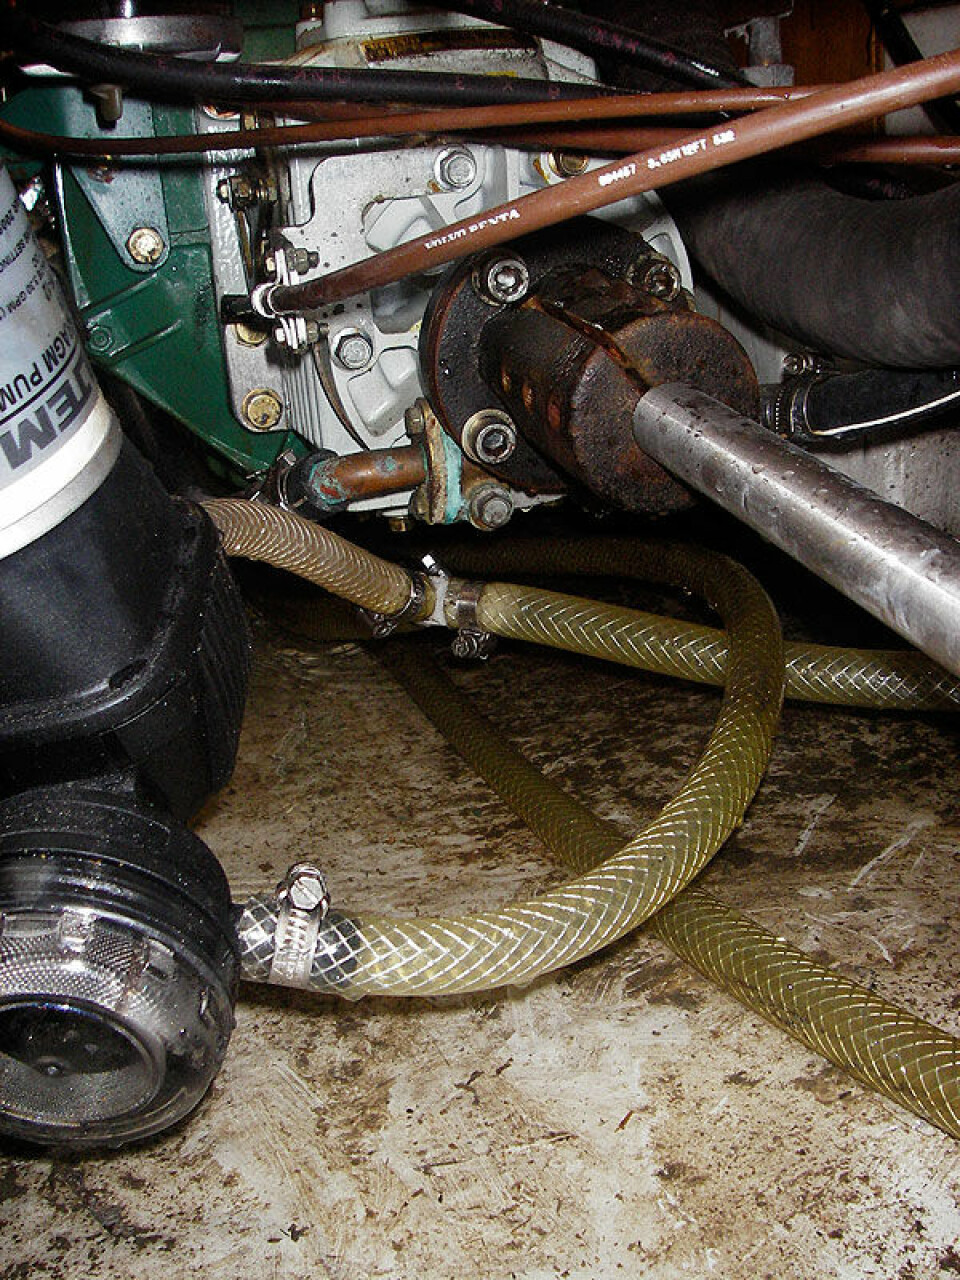 Slangene var gamle, men med ny pumpe kom en borti akslingen som lagde hull i slangen. Vannlekasjen kan ha vært en årsak til at motoren stoppet.